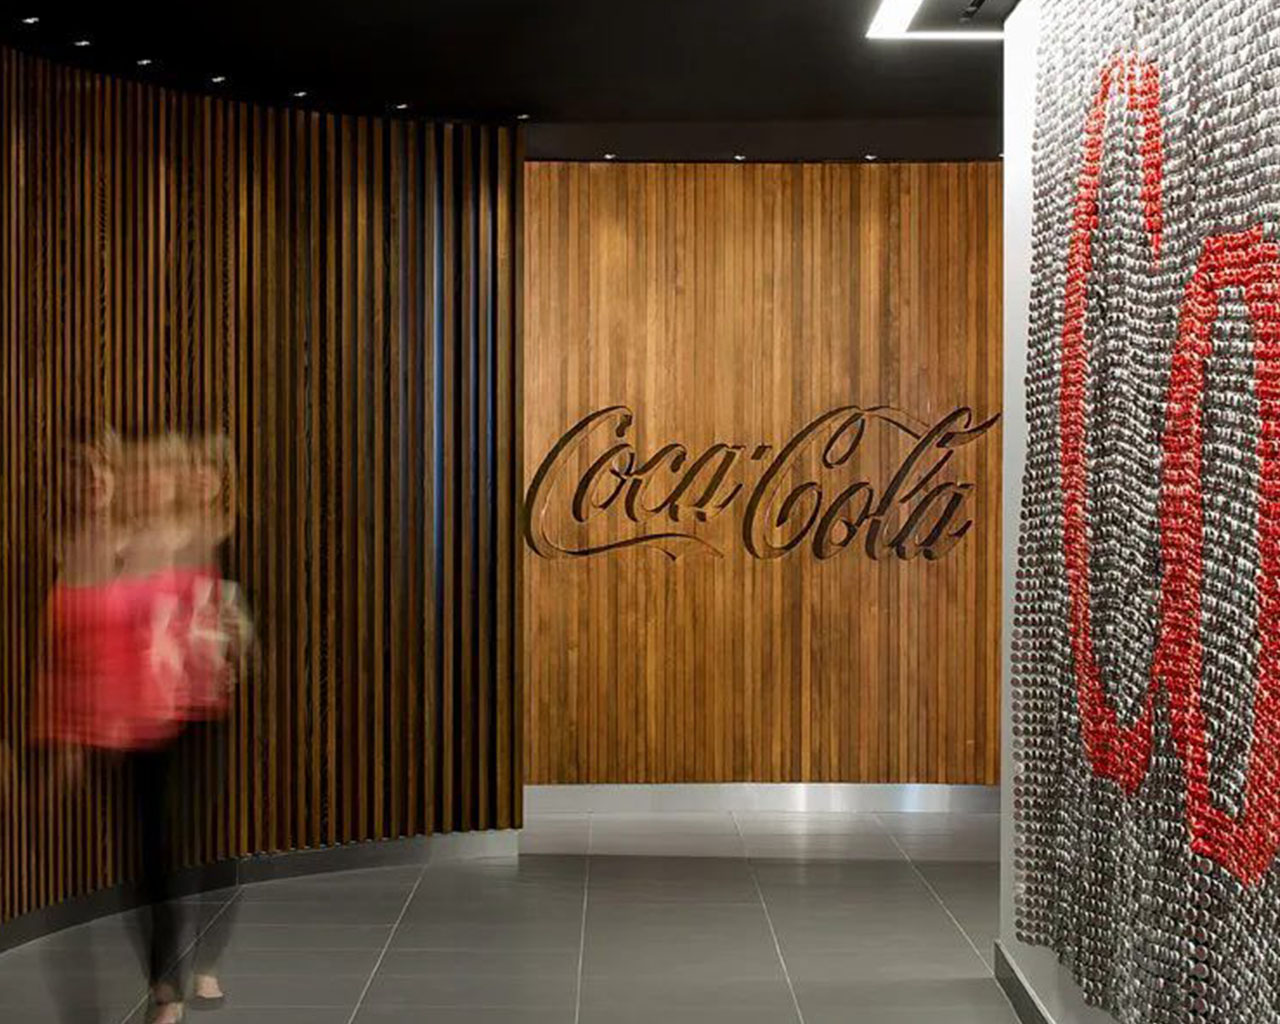 Una mujer caminando alrededor de la oficina de Coca-Cola